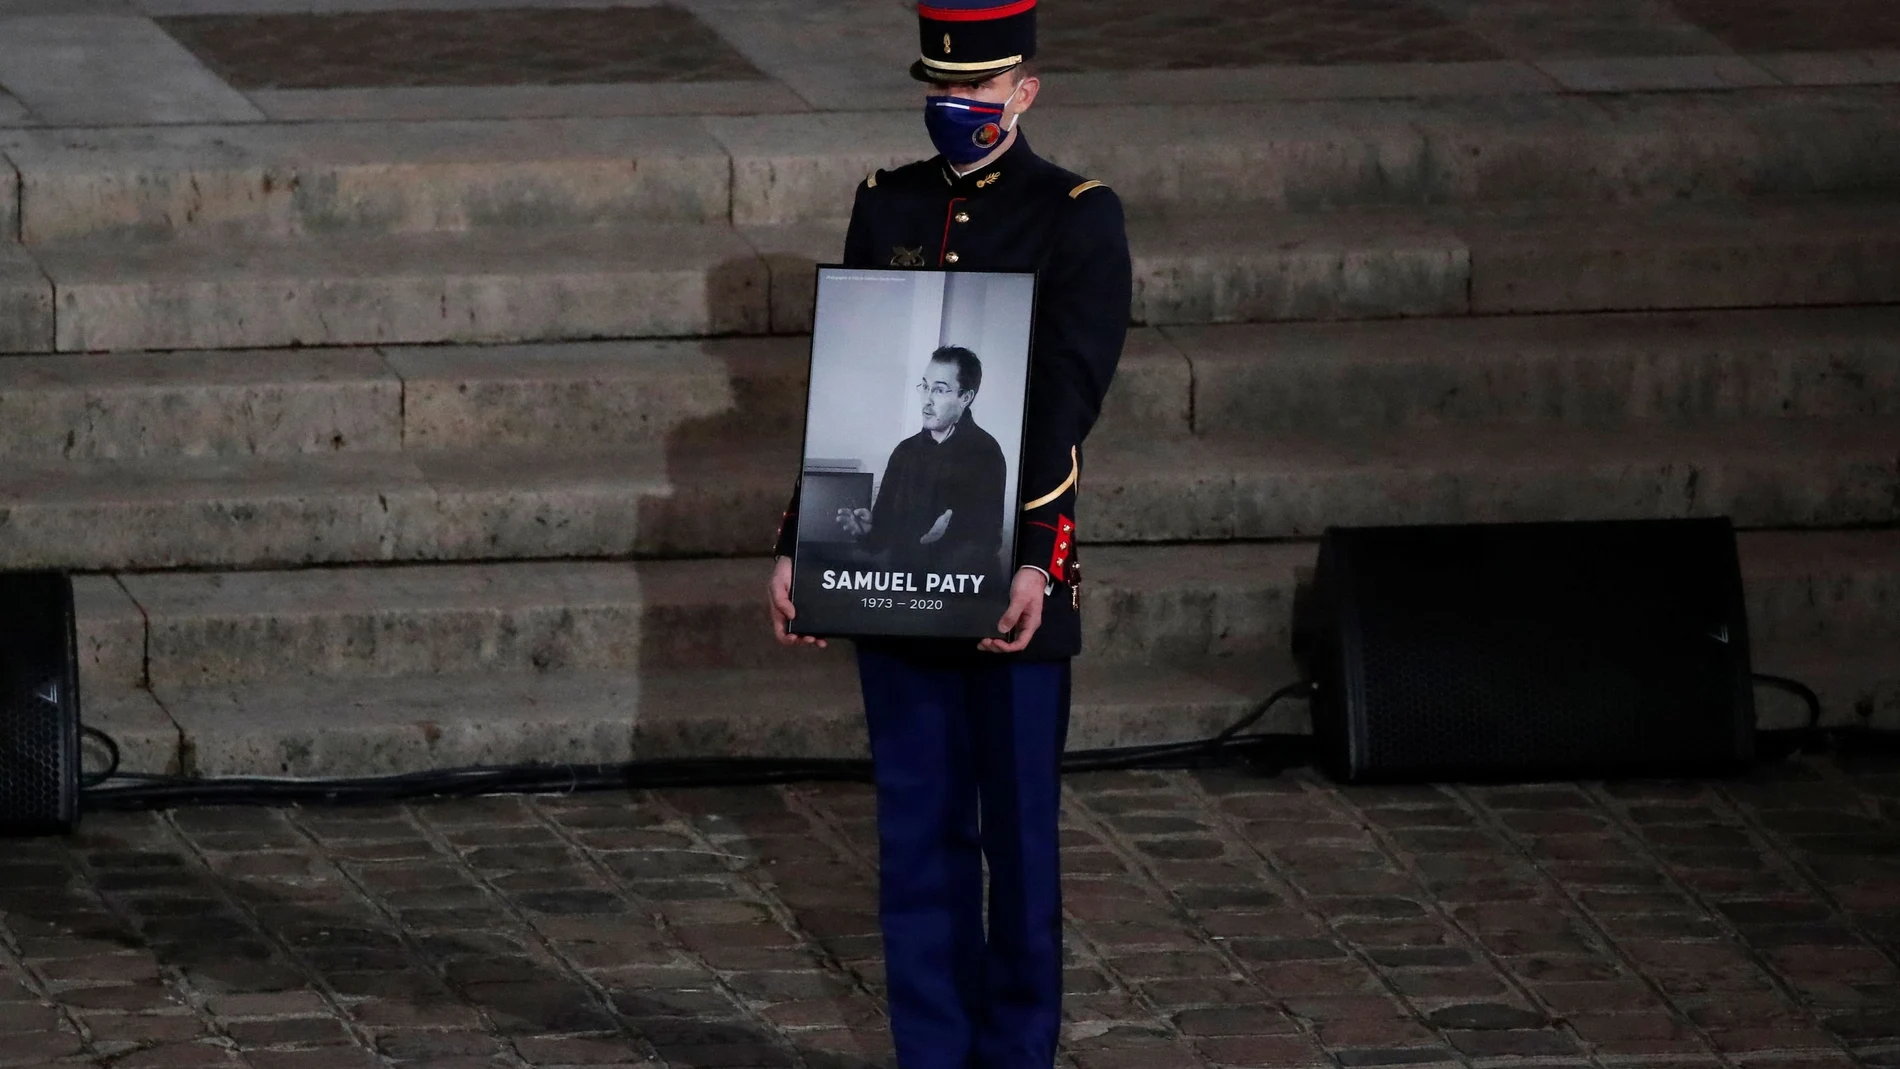 La Guardia Nacional francesa rindió el miércoles un homenaje al profesor decapitado el viernes pasado en La Sorbona